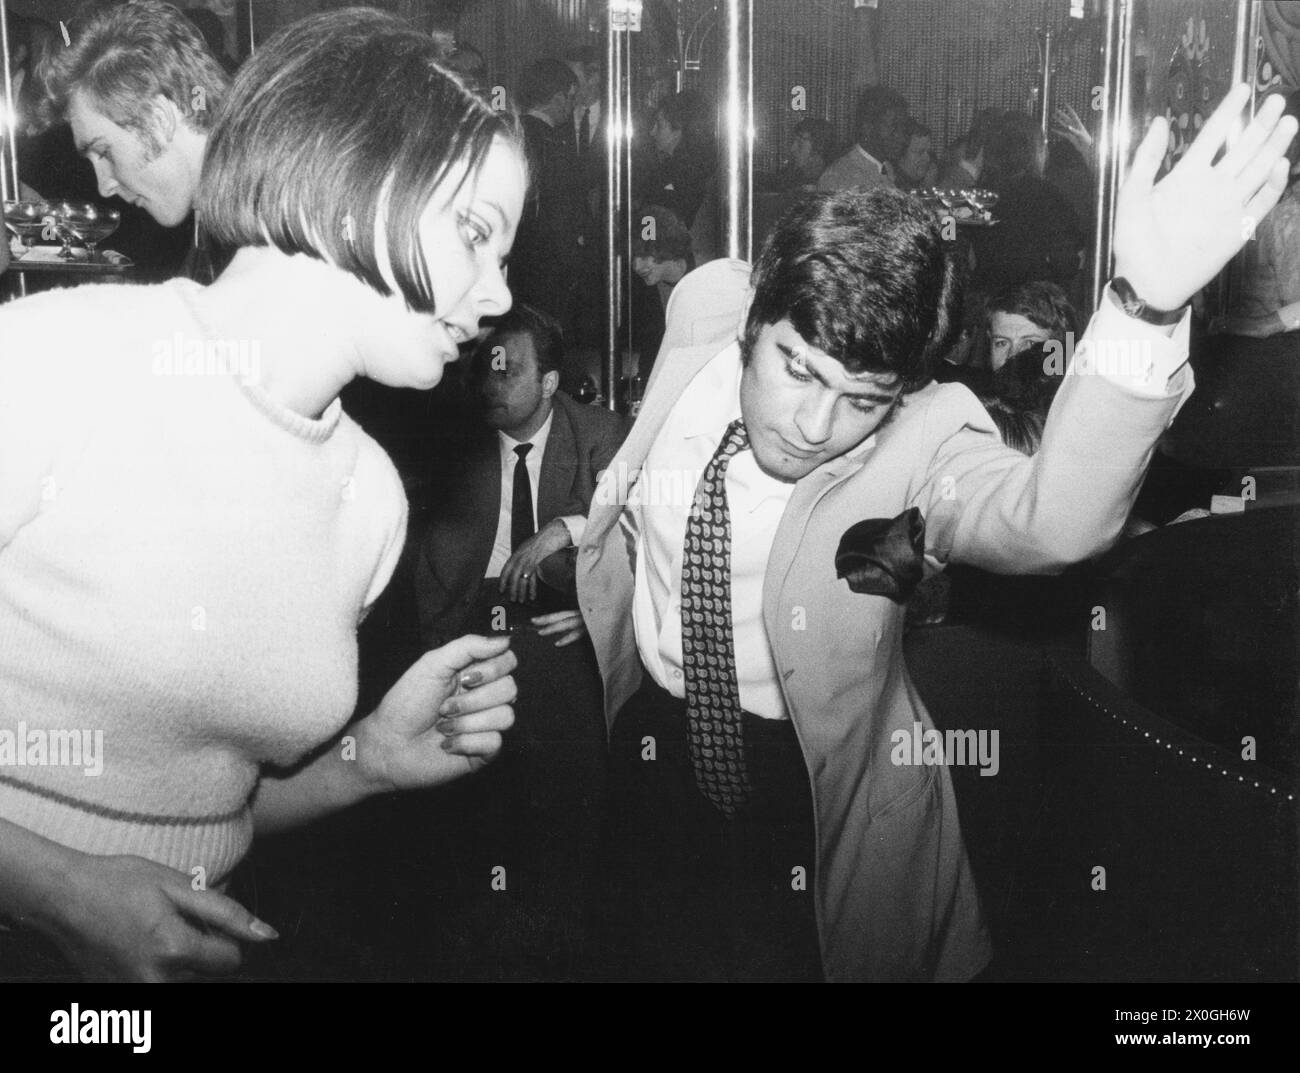 Une femme et un homme dansant dans une discothèque.(enregistrement non daté) [traduction automatique] Banque D'Images